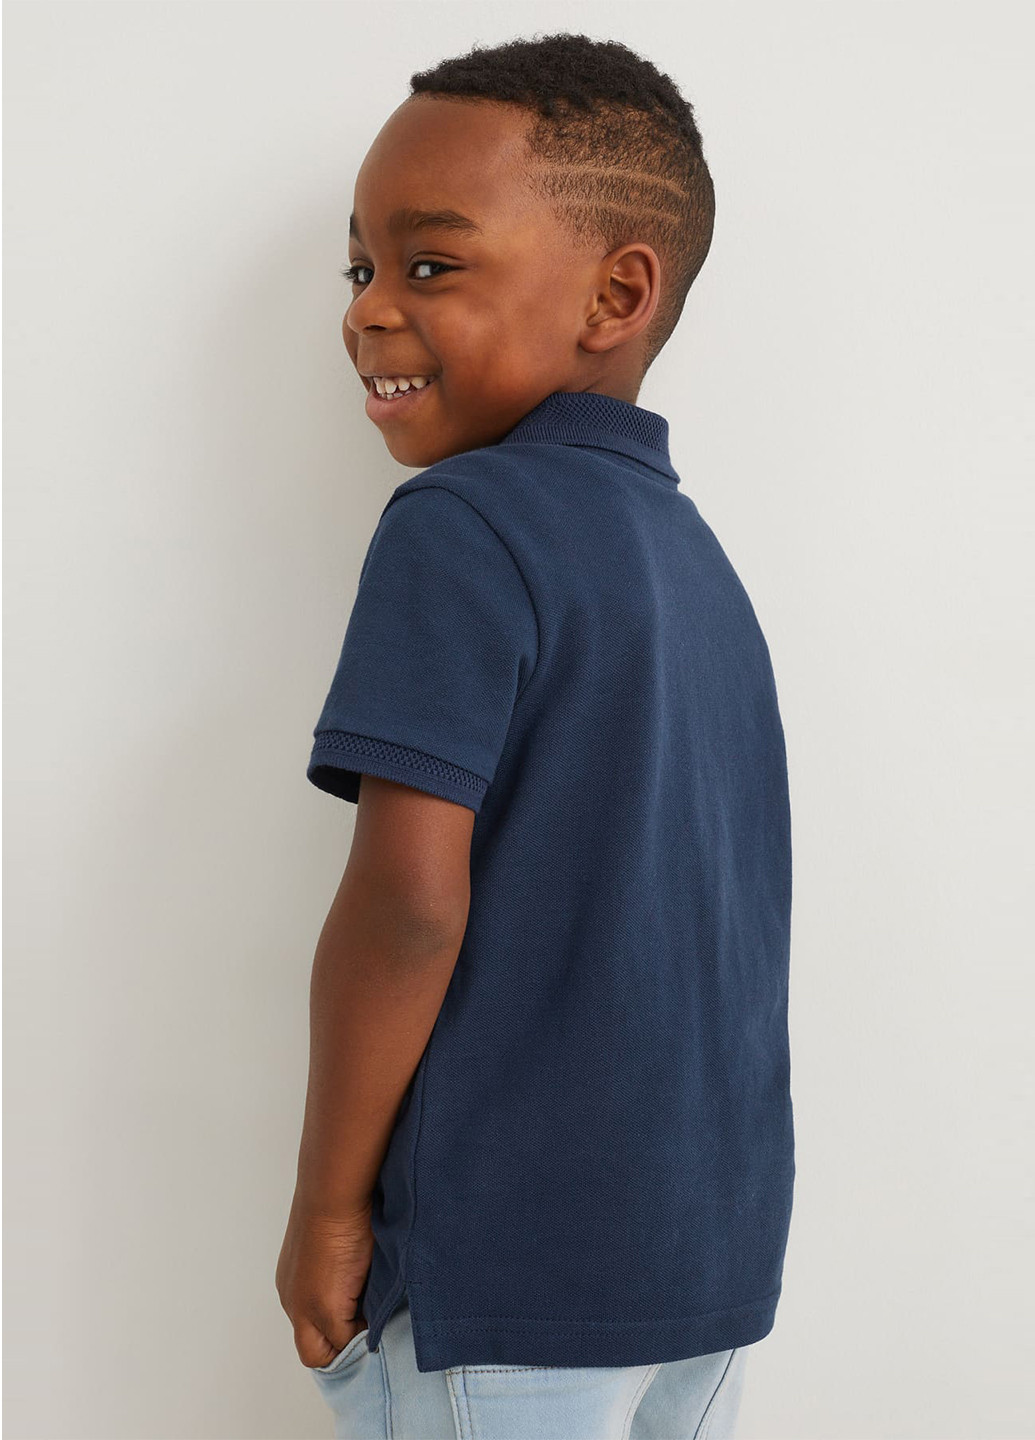 Цветная детская футболка-поло (2 шт.) для мальчика C&A меланжевая